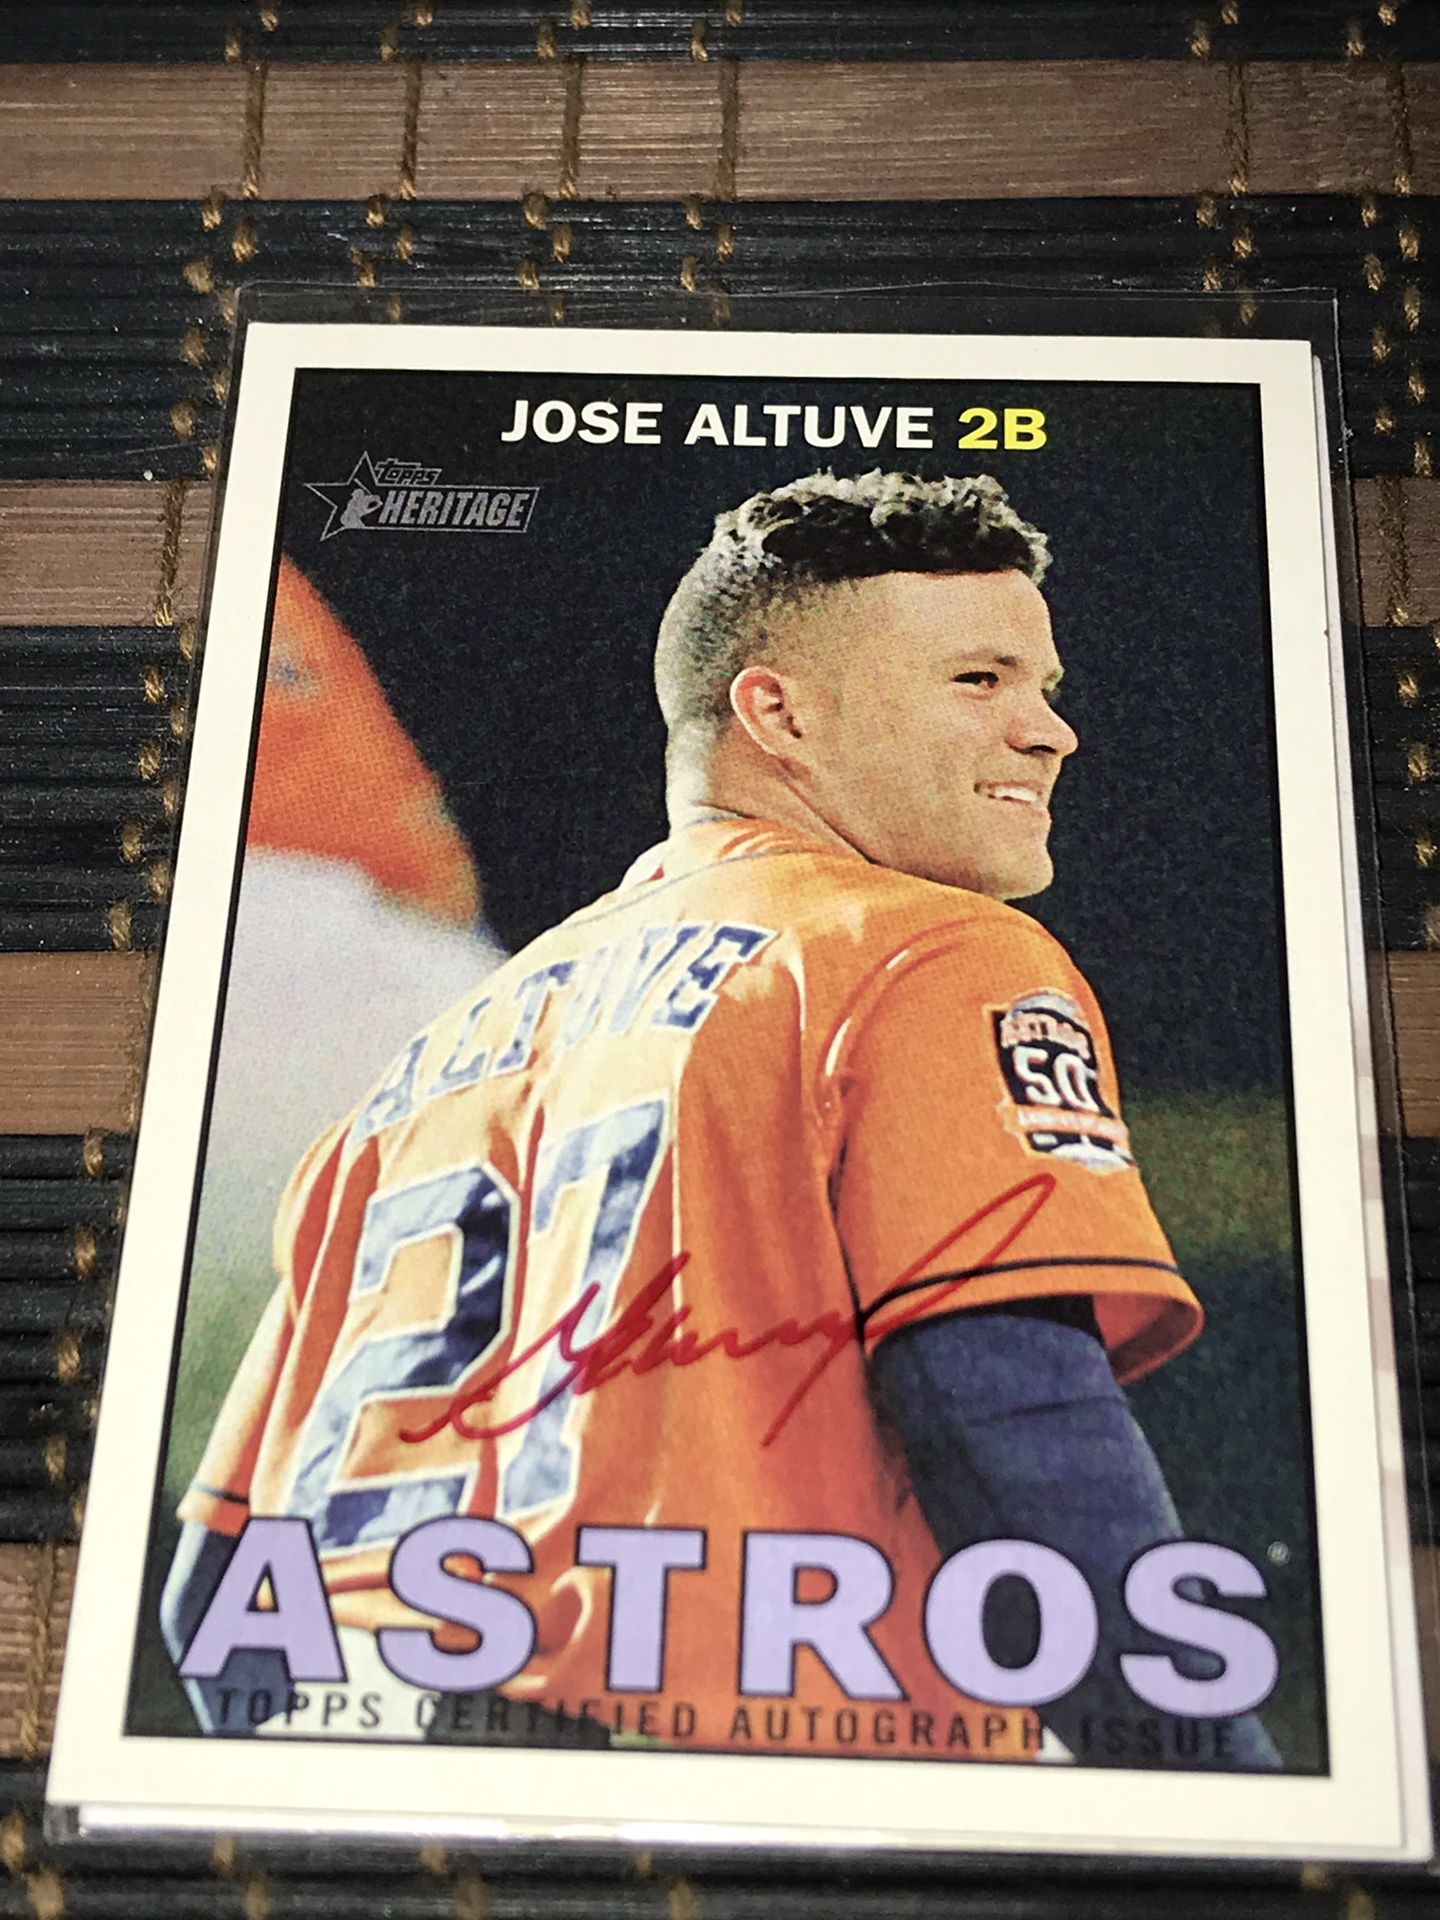 Jose Altuve Autograph Card